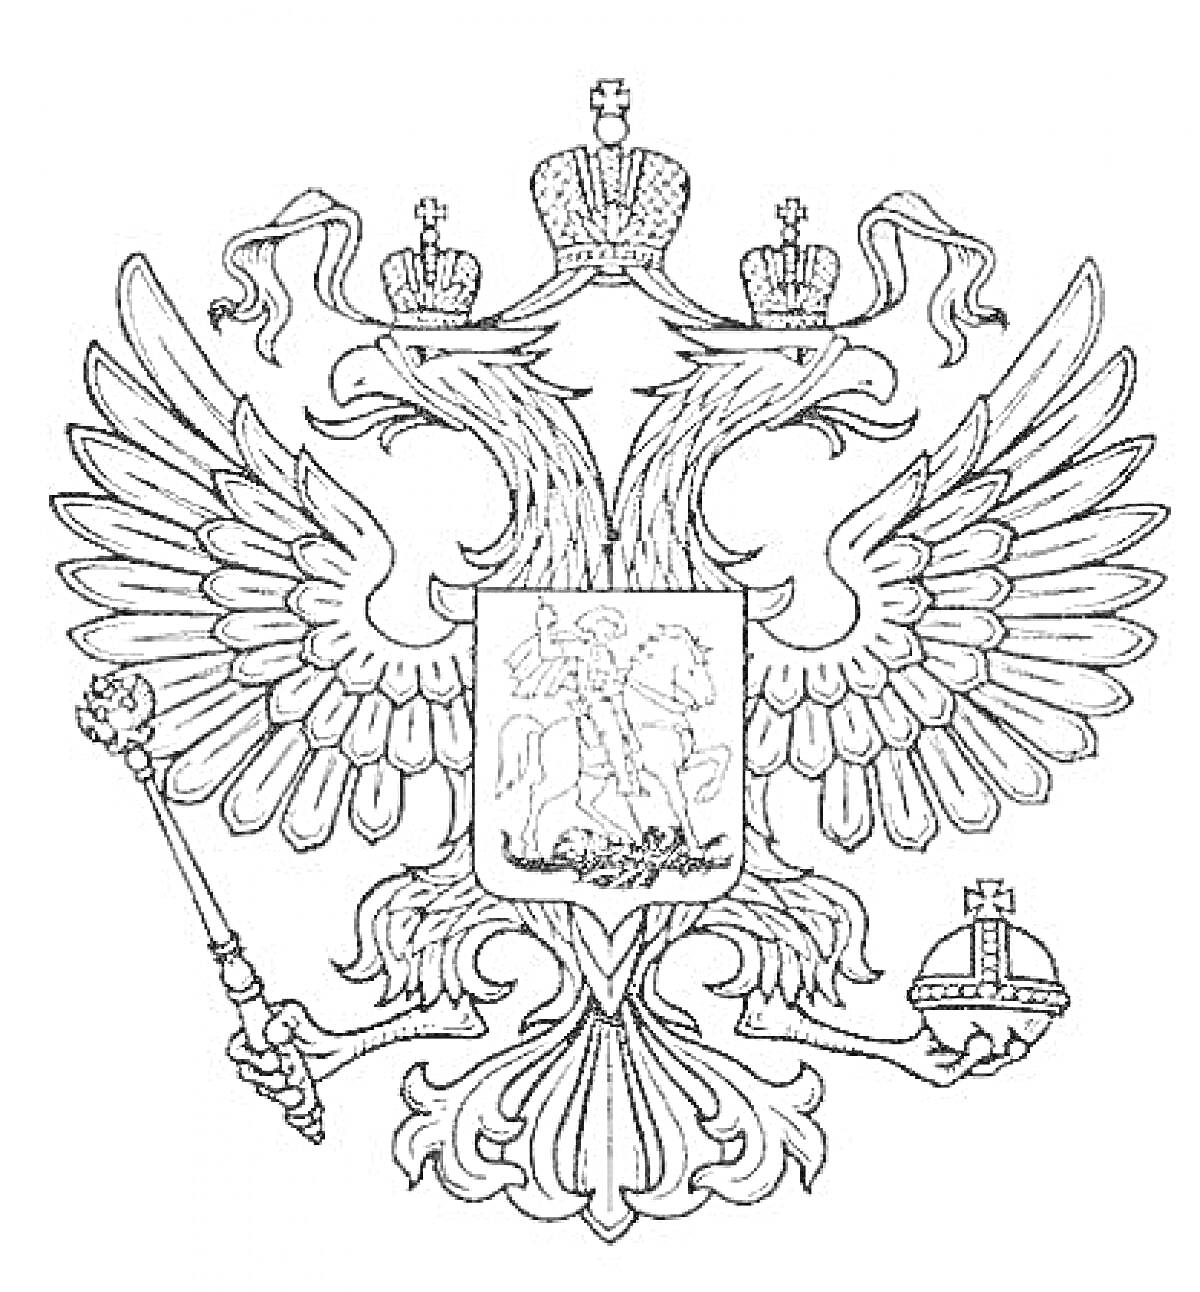 Герб России - двуглавый орел с тремя коронами, скипетром и державой, на груди - святой Георгий Победоносец